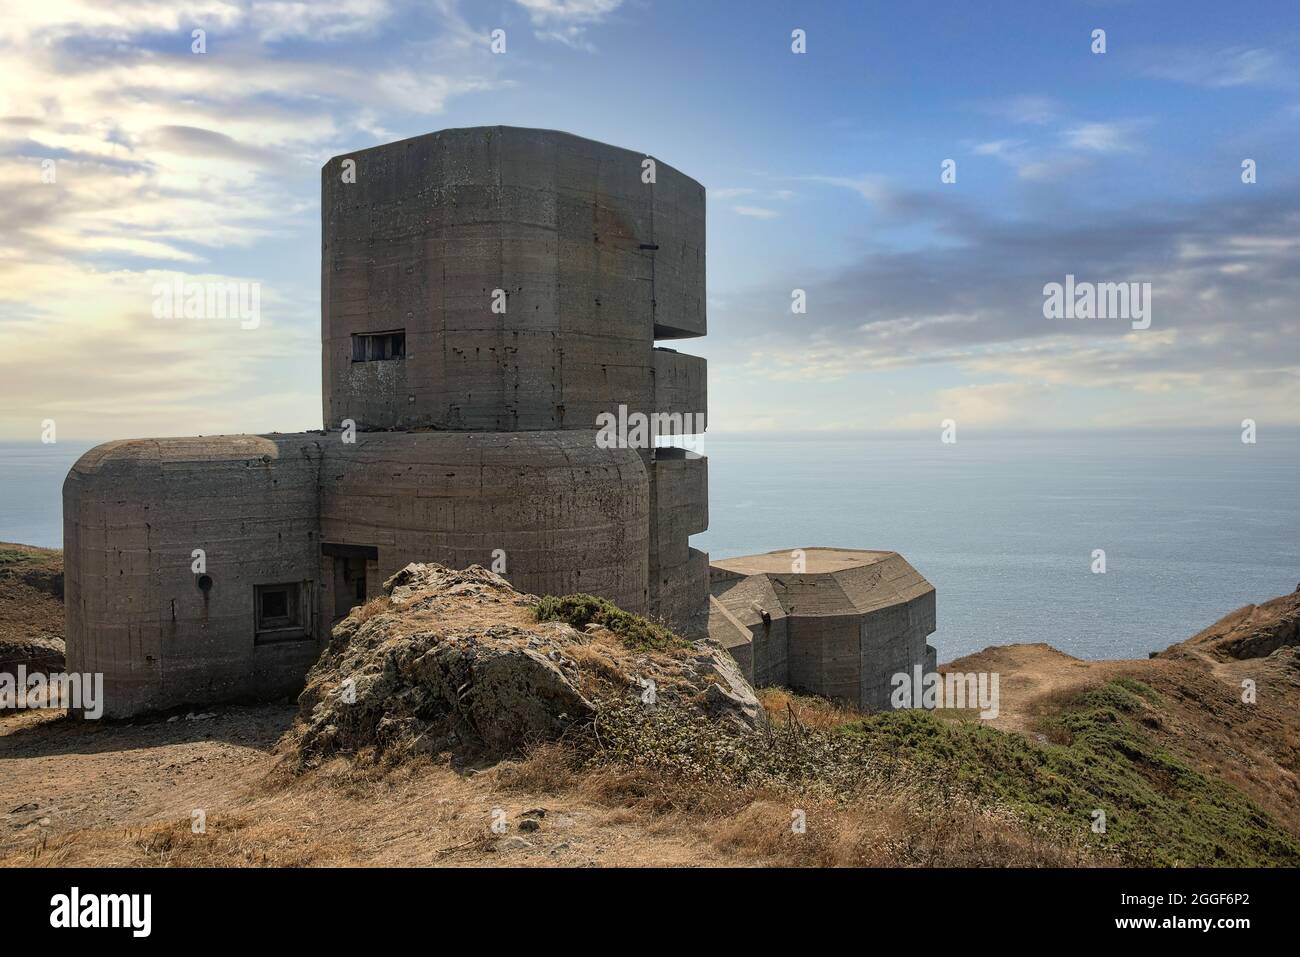 Bunker d'observation allemand construit pendant la Seconde Guerre mondiale sur l'île de Guernesey, une des îles Anglo-Normandes dans la Manche. Banque D'Images